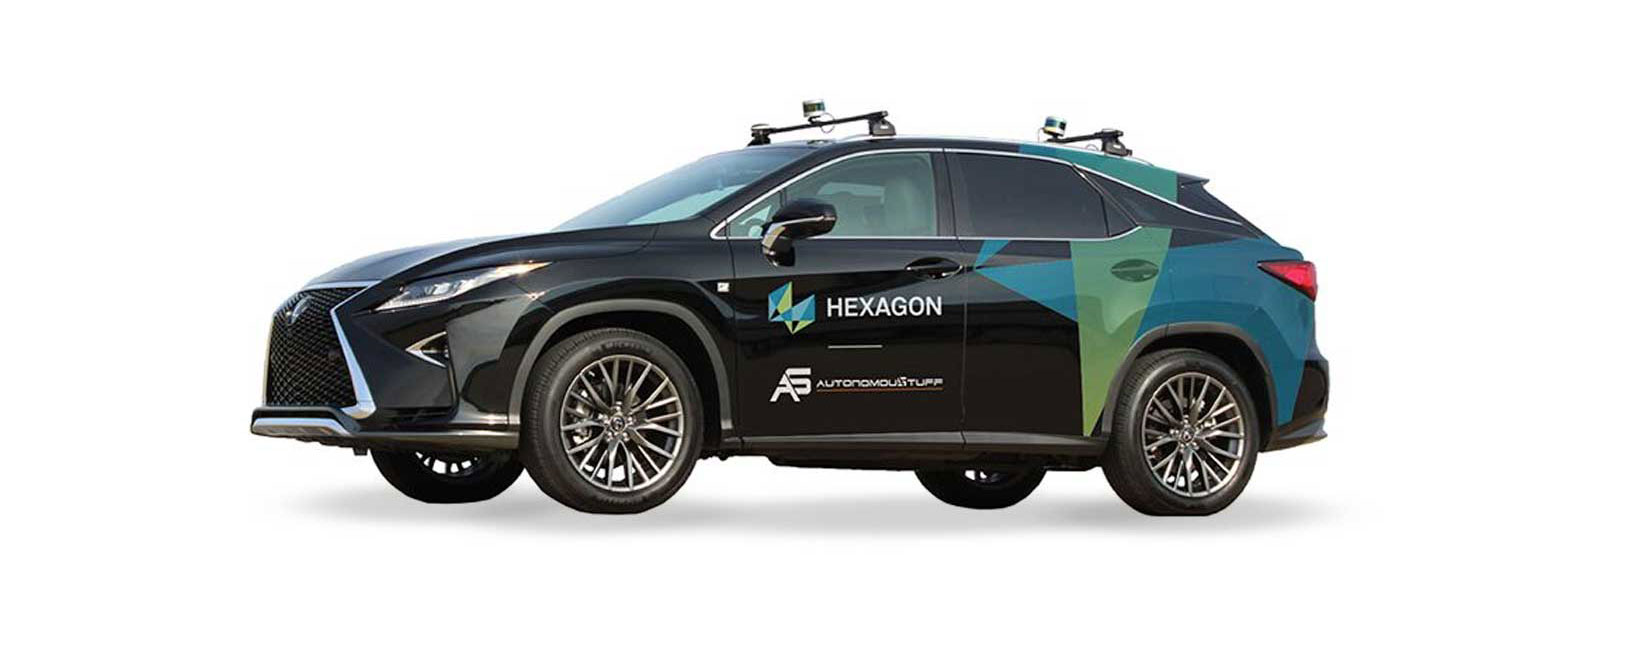 Ansicht eines Fahrzeugs der Marke Hexagon mit Drive-by-Wire-Funktionalität